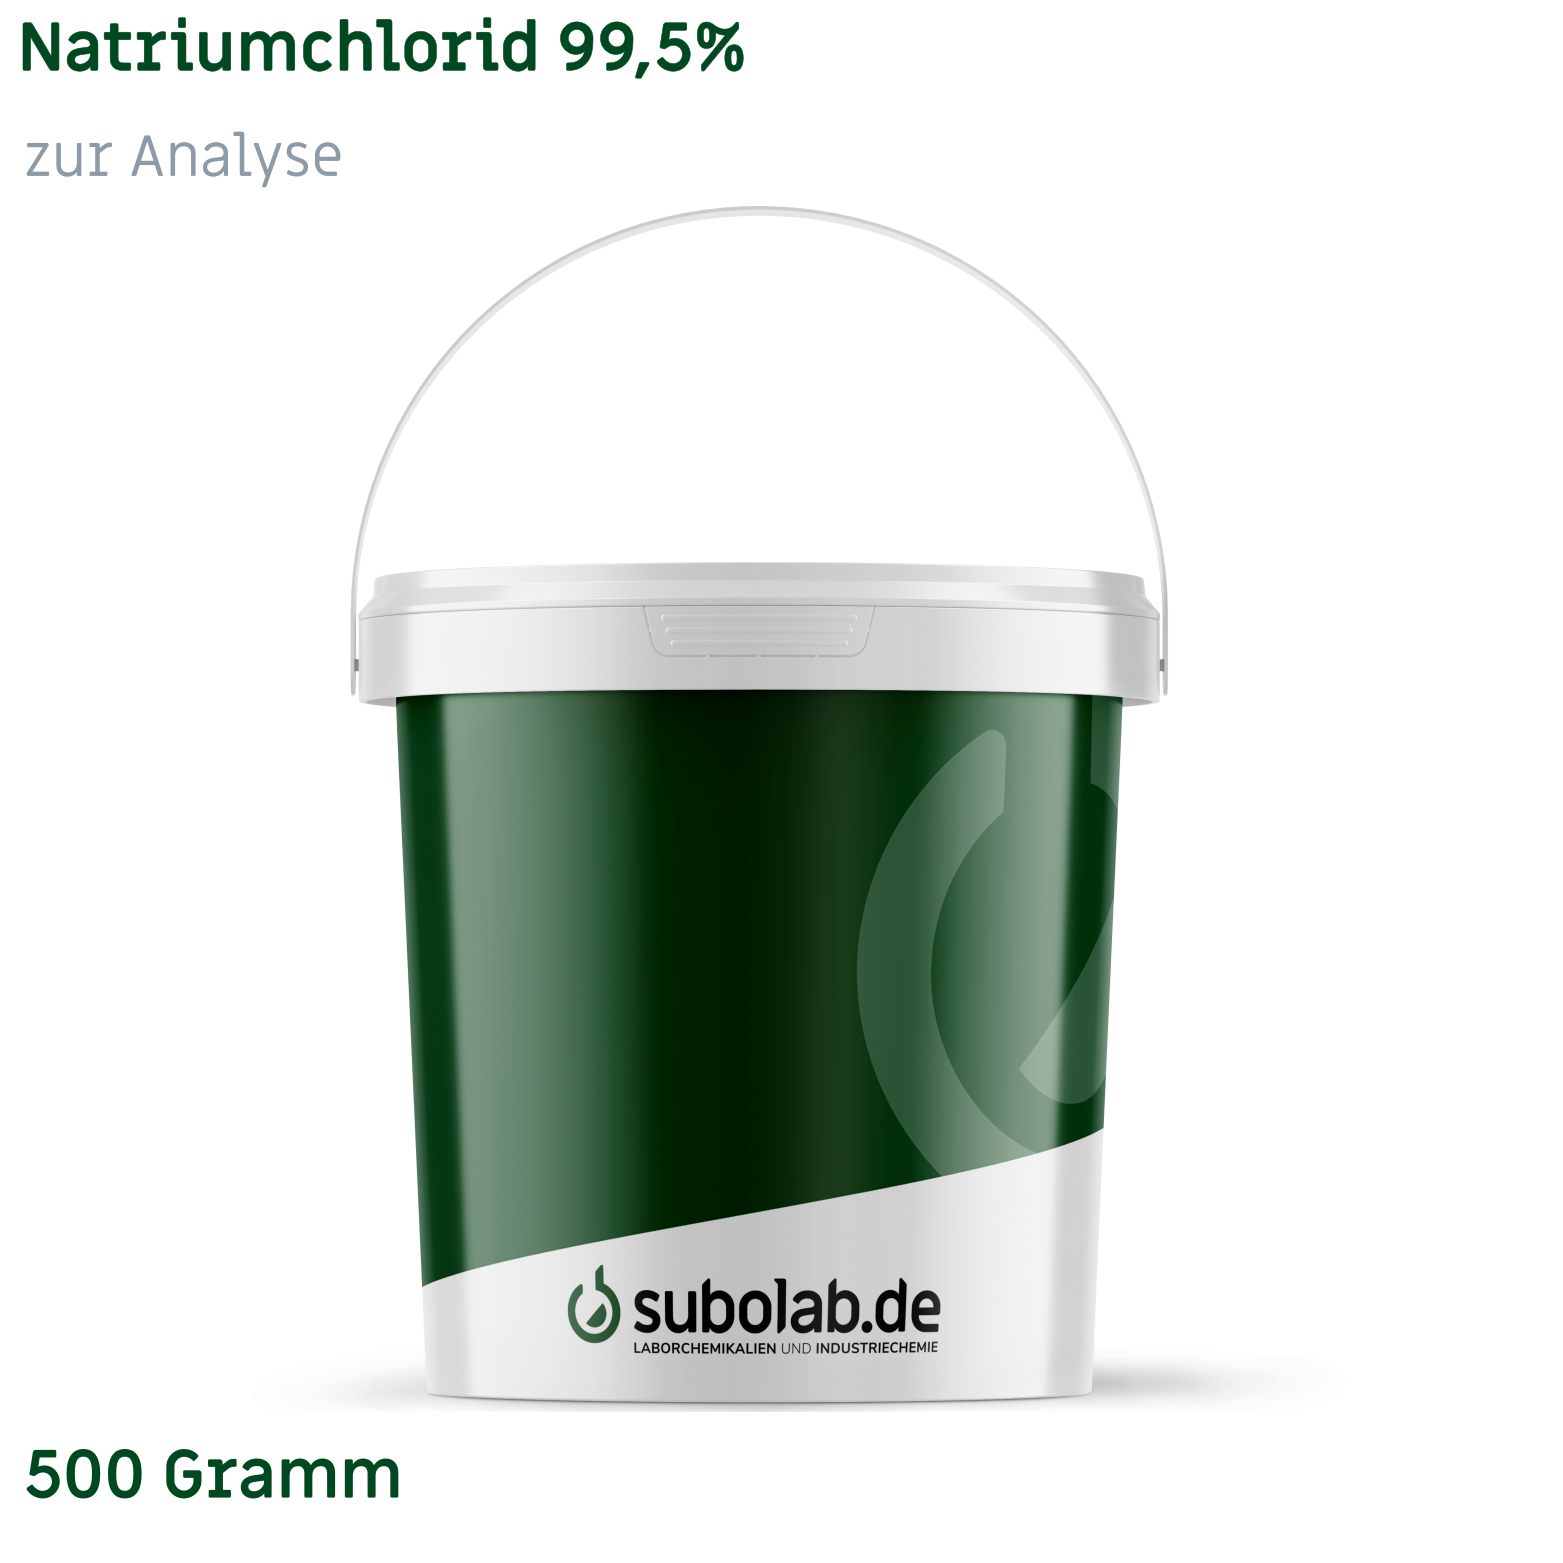 Bild von Natriumchlorid 99,5% zur Analyse (500 Gramm)